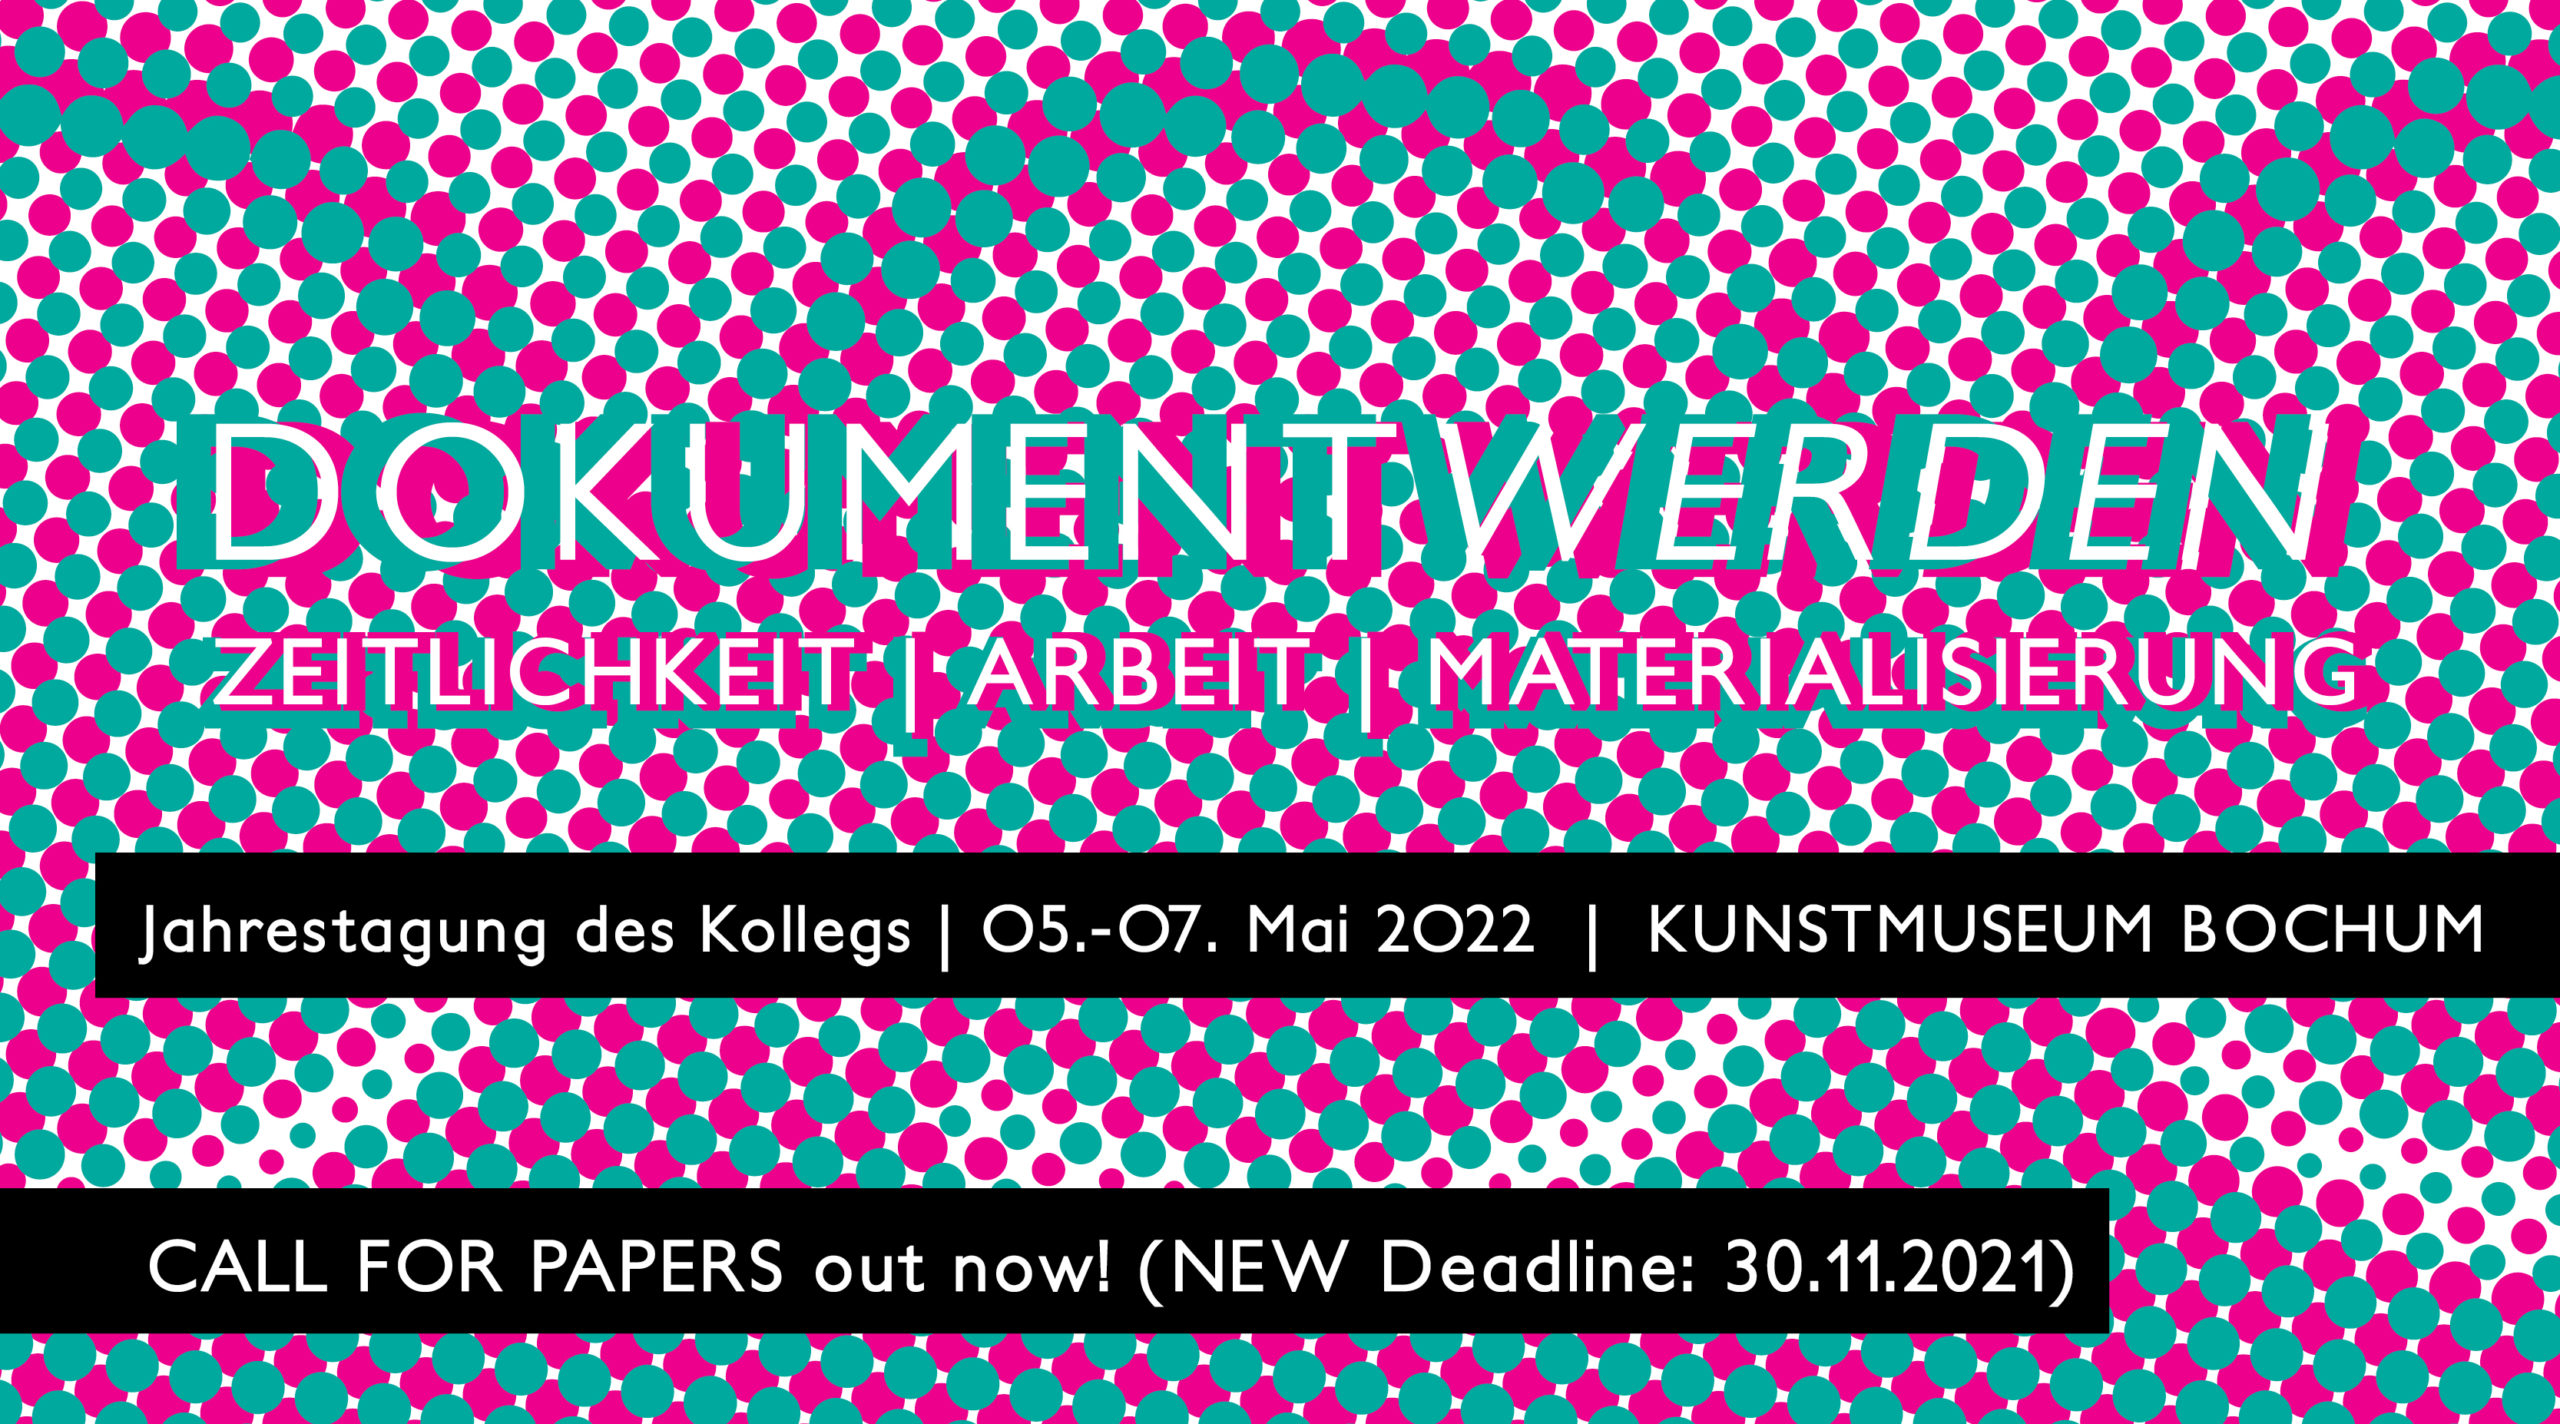 Call for Papers: Jahrestagung 2022 DOKUMENTWERDEN (Deadline: 30.11.2021)